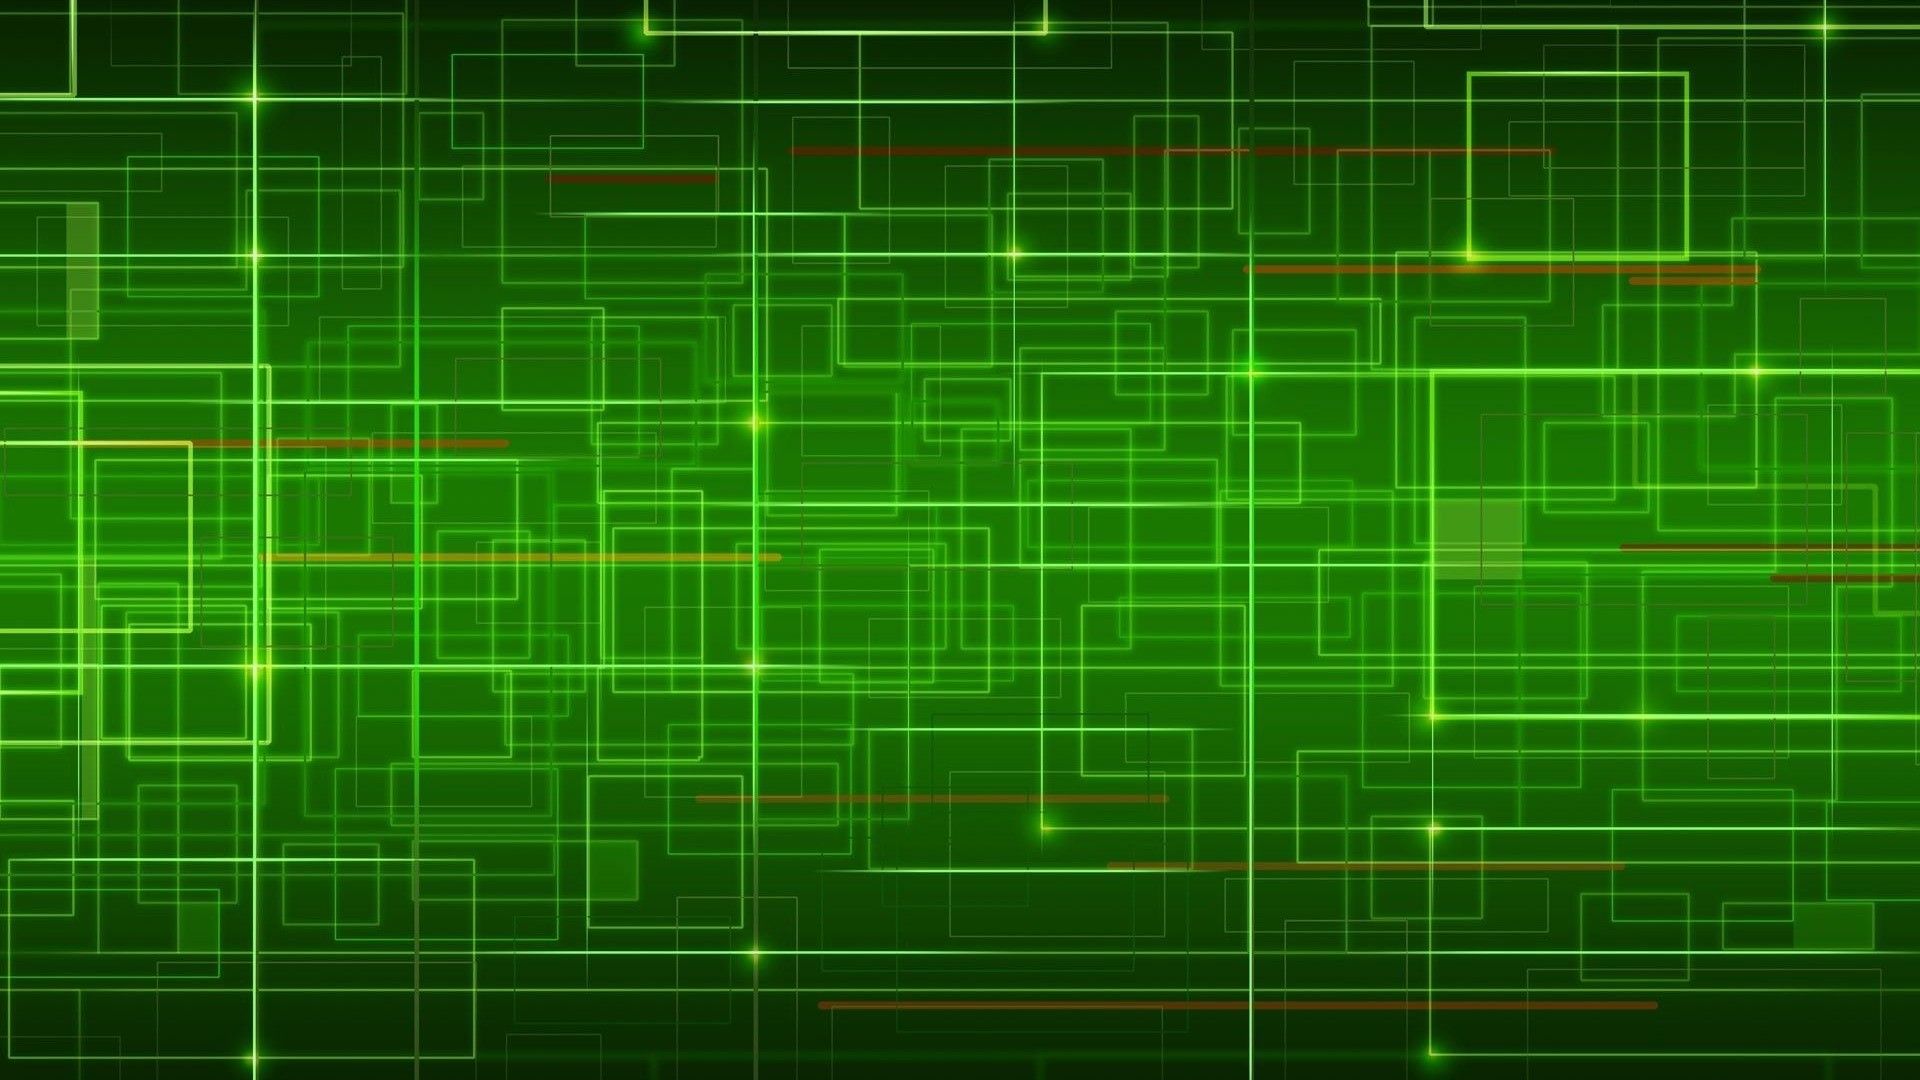 Hình nền Máy tính màu xanh lá cây chất lượng cao sẽ là sự lựa chọn hoàn hảo cho những ai yêu thích thiết kế màu sắc và độ phân giải tuyệt đỉnh. Chắc chắn rằng những hình ảnh này sẽ làm cho máy tính của bạn trở nên nổi bật và đẳng cấp hơn bao giờ hết.